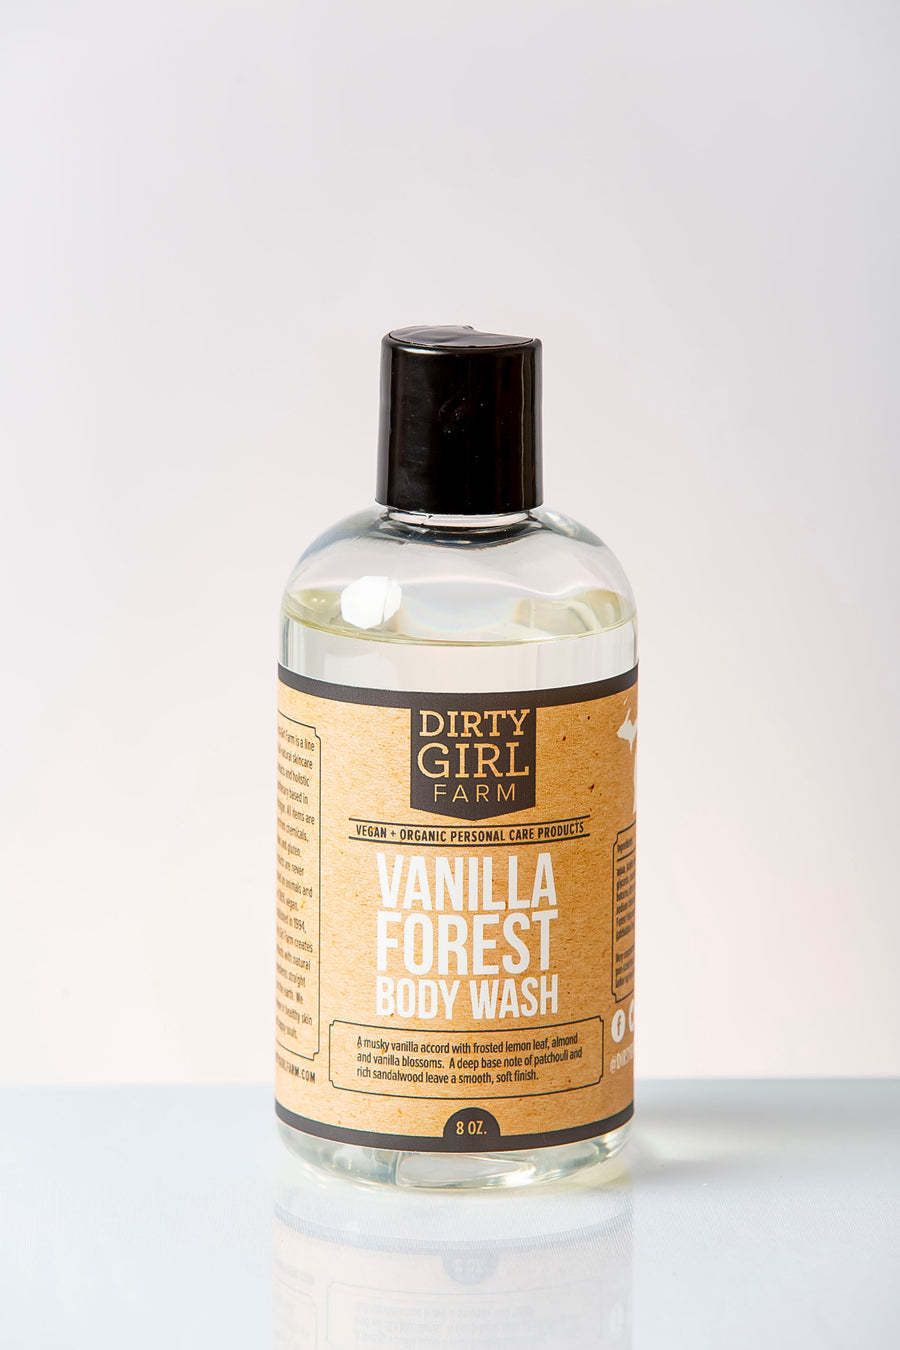 Dirty Girl Farm Vanilla Forest Body Wash